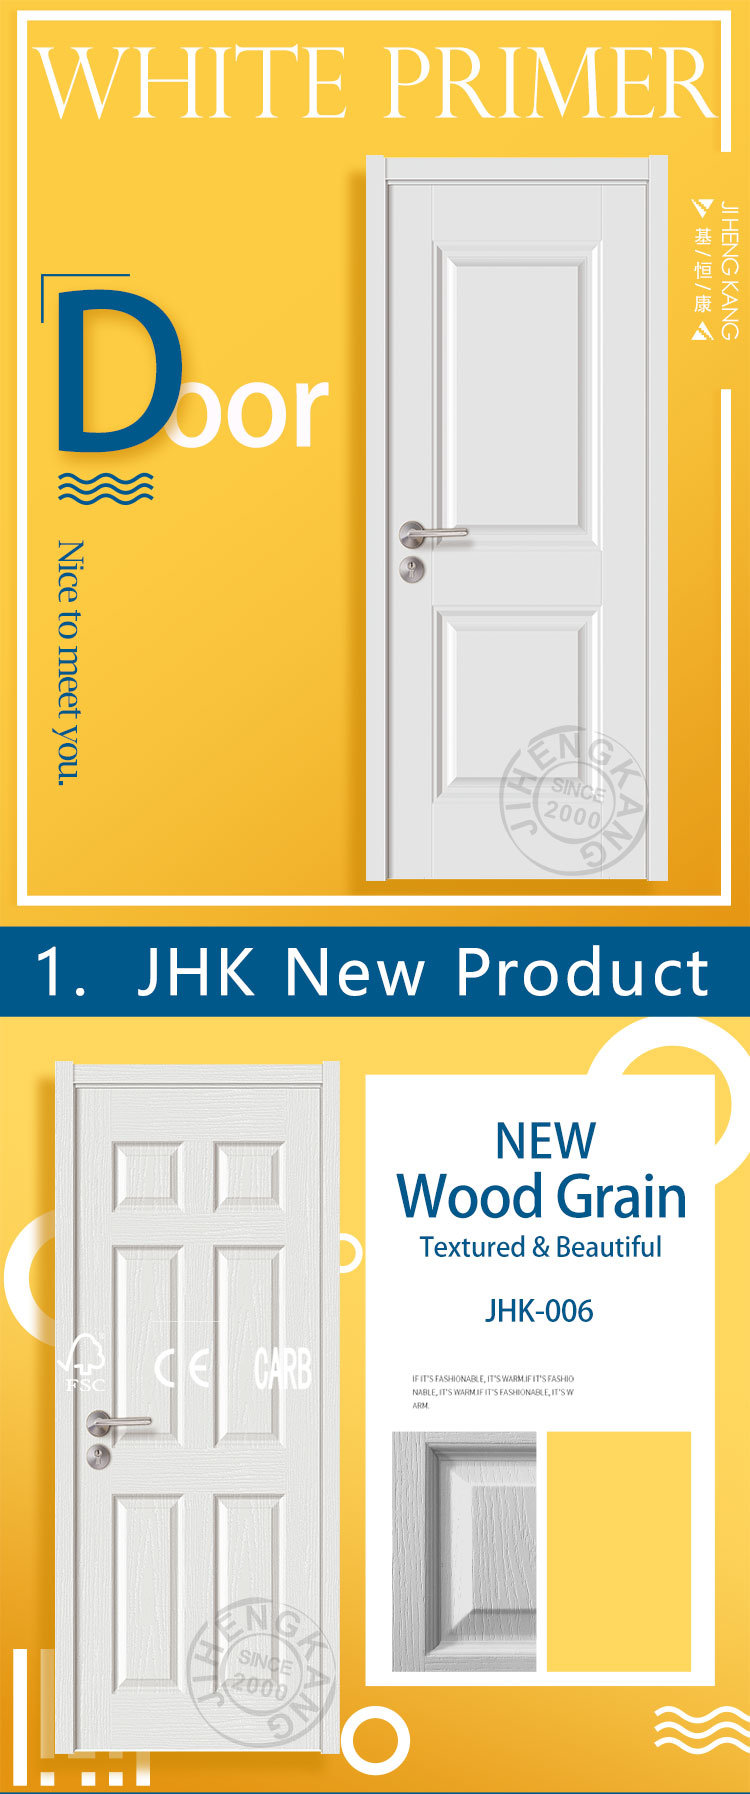 Jhk-013 White Primer Internal Wooden New Molded White Primer Door